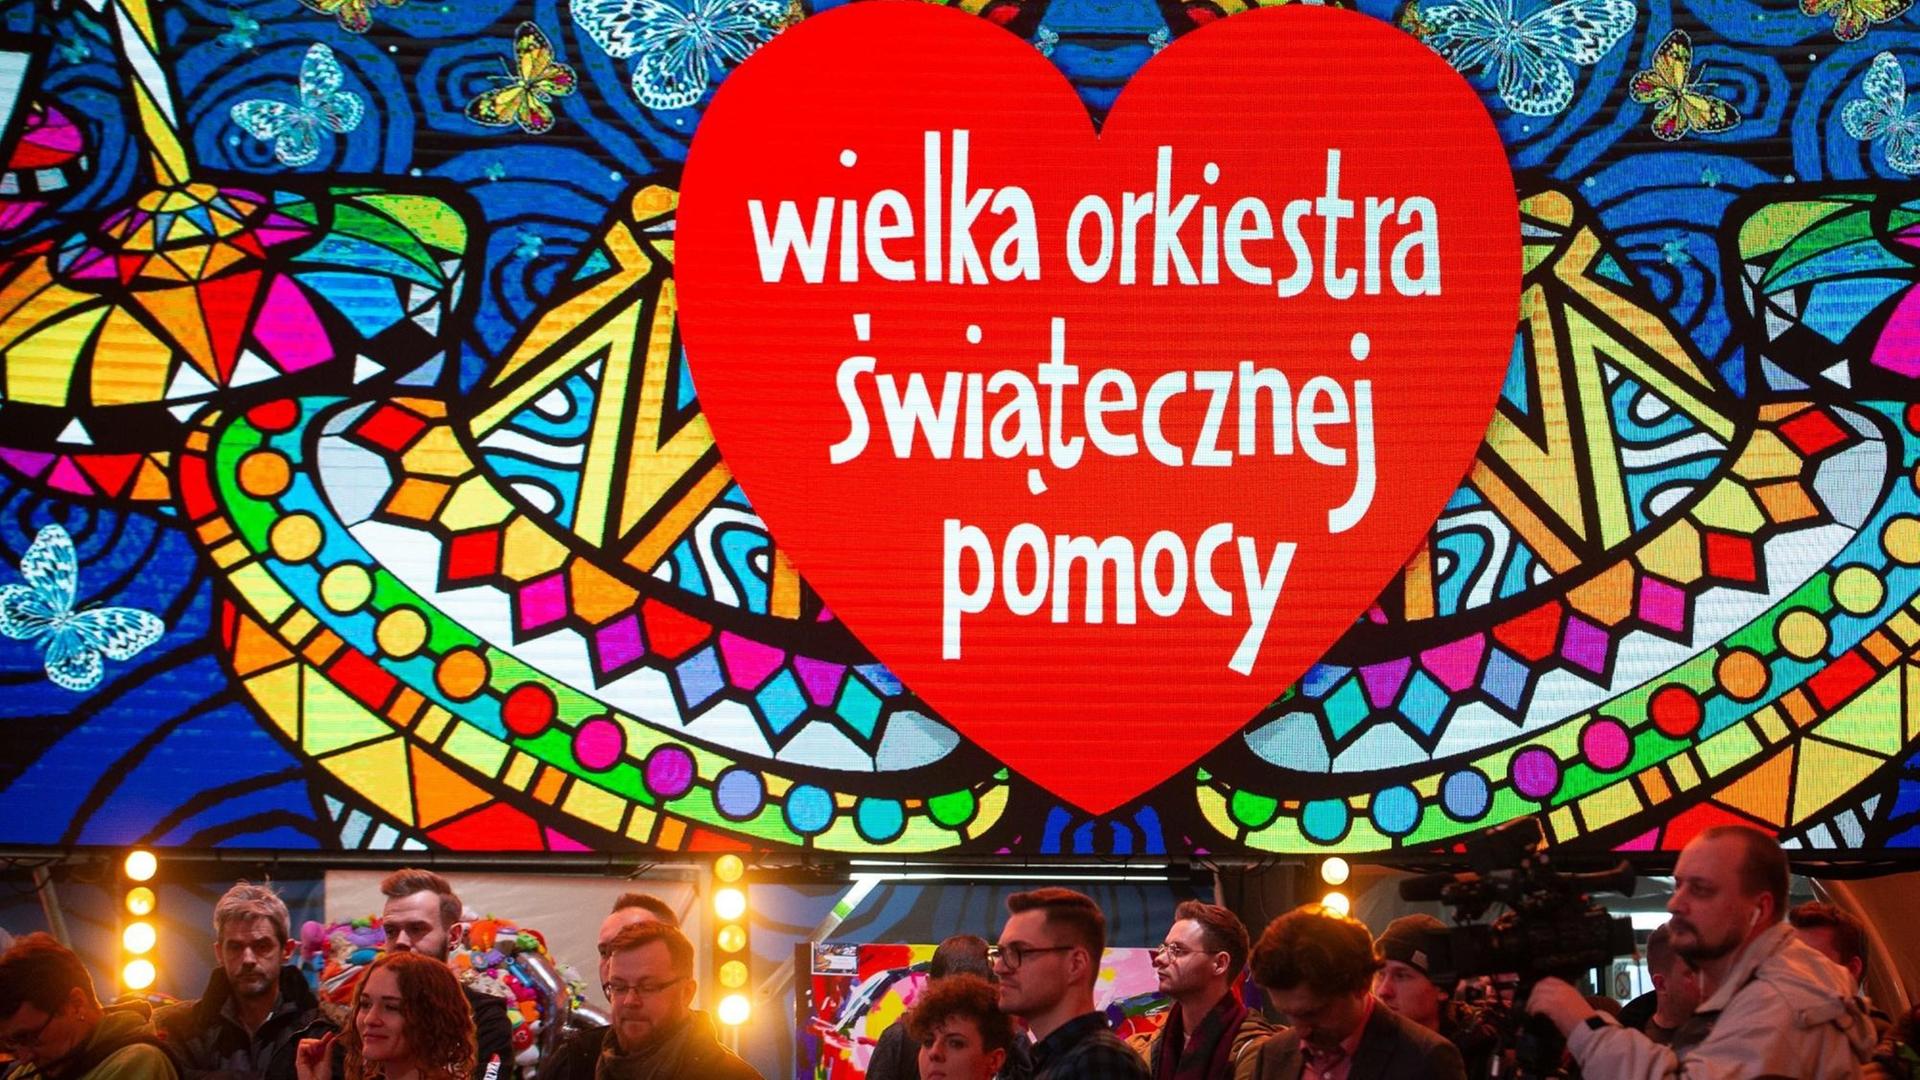 Das Logo der polnischen Benefizveranstaltung "Wielka Orkiestra Swiatecznej Pomocy" ("Großes Orchester der Weihnachtshilfe") hängt in Übergröße über Fotografen und Kamerateams in Warschau